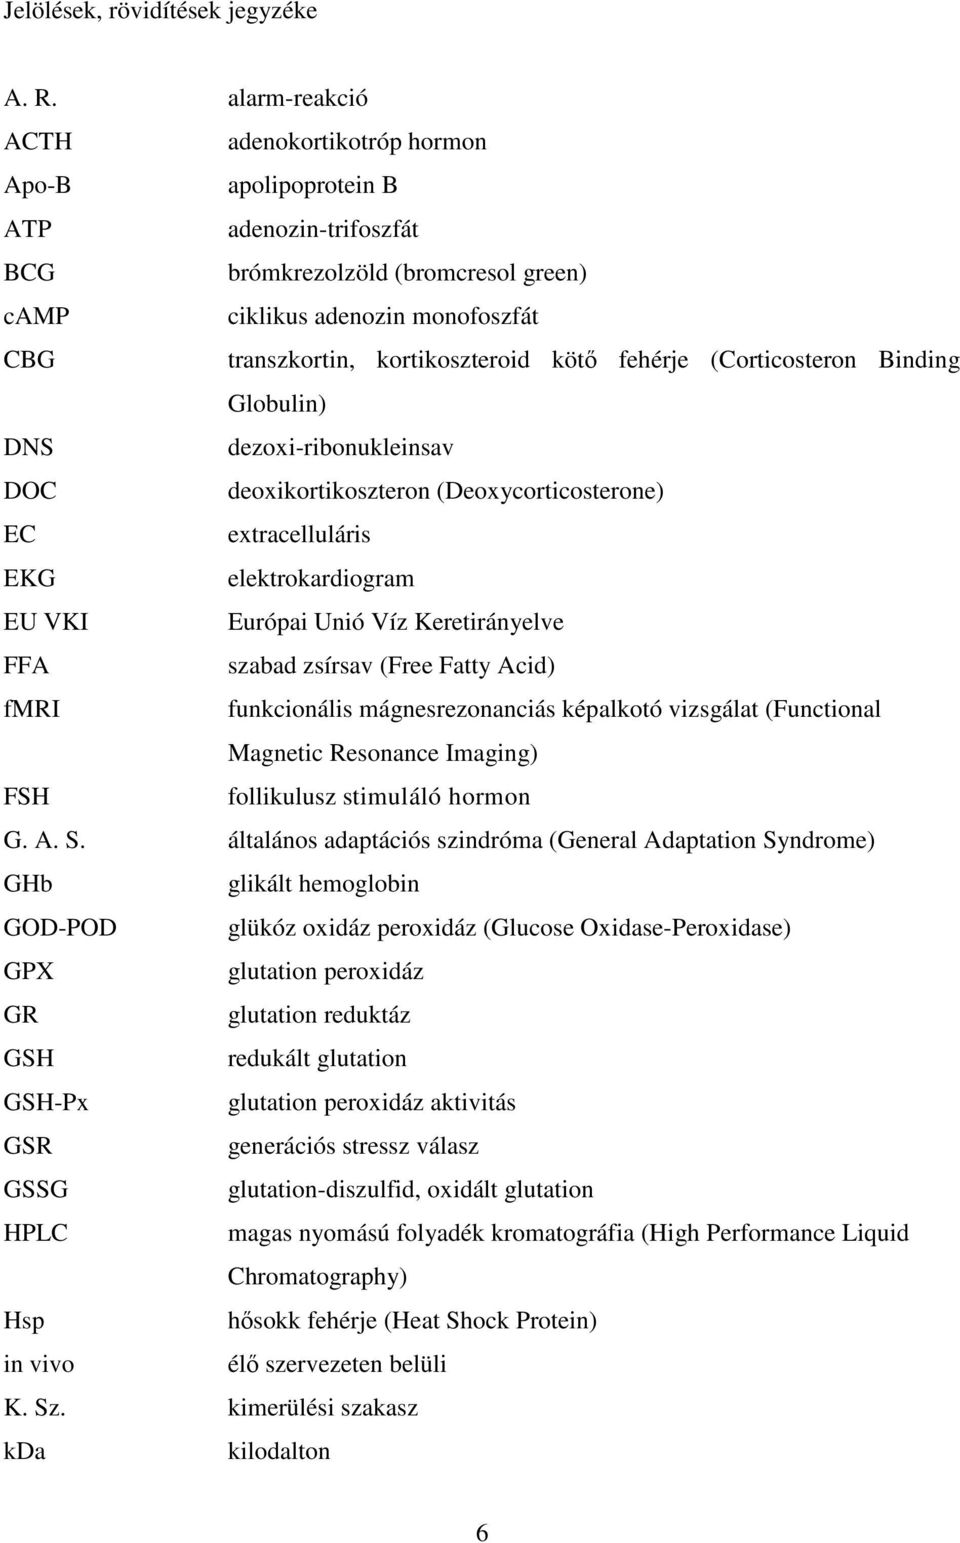 kötı fehérje (Corticosteron Binding Globulin) DNS dezoxi-ribonukleinsav DOC deoxikortikoszteron (Deoxycorticosterone) EC extracelluláris EKG elektrokardiogram EU VKI Európai Unió Víz Keretirányelve